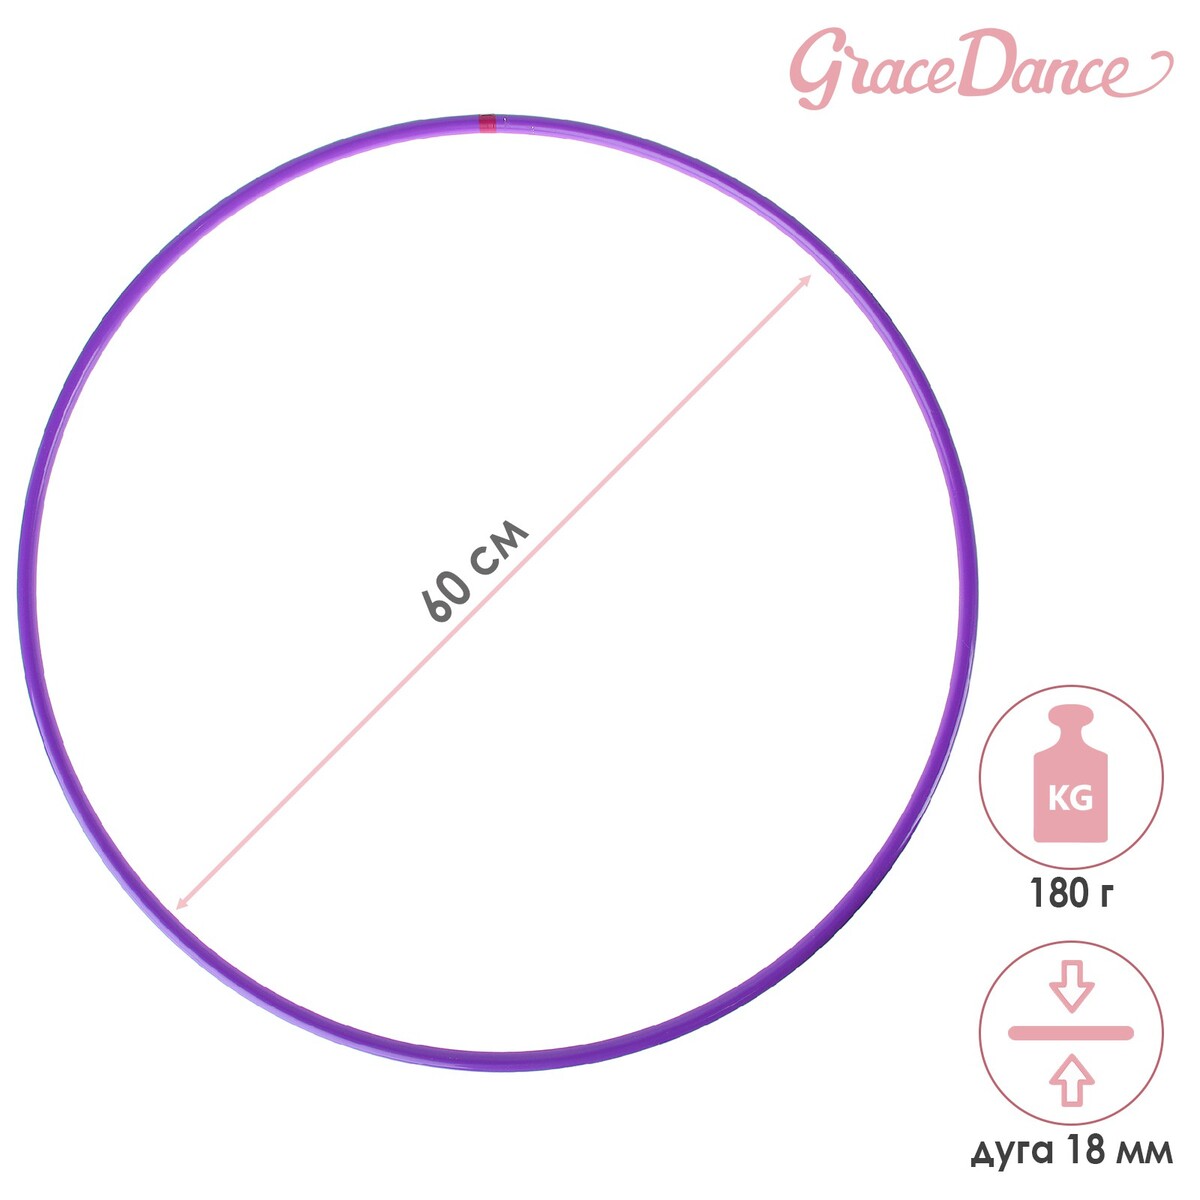 Обруч для художественной гимнастики grace dance, профессиональный, d=60 см, цвет фиолетовый обруч профессиональный для художественной гимнастики grace dance d 60 см малиновый